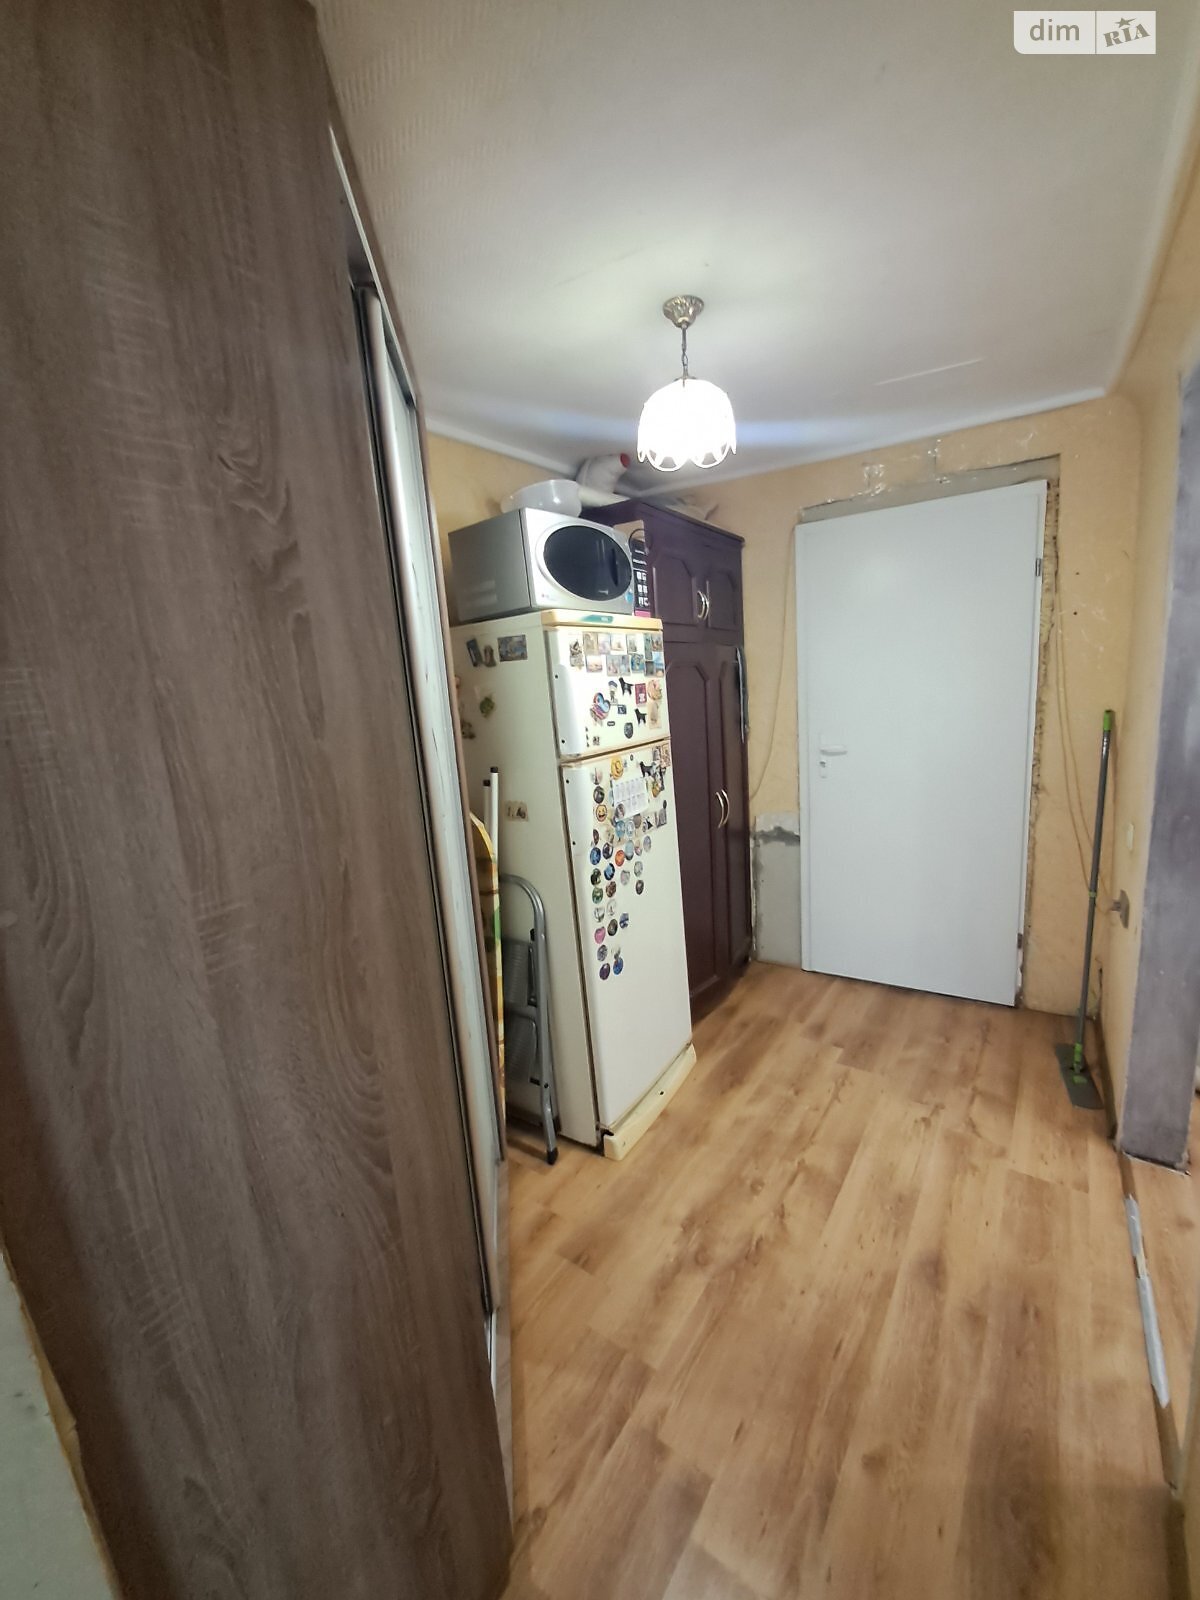 Продажа части дома в Днепре, улица Могилевская, район Мазепы, 2 комнаты фото 1